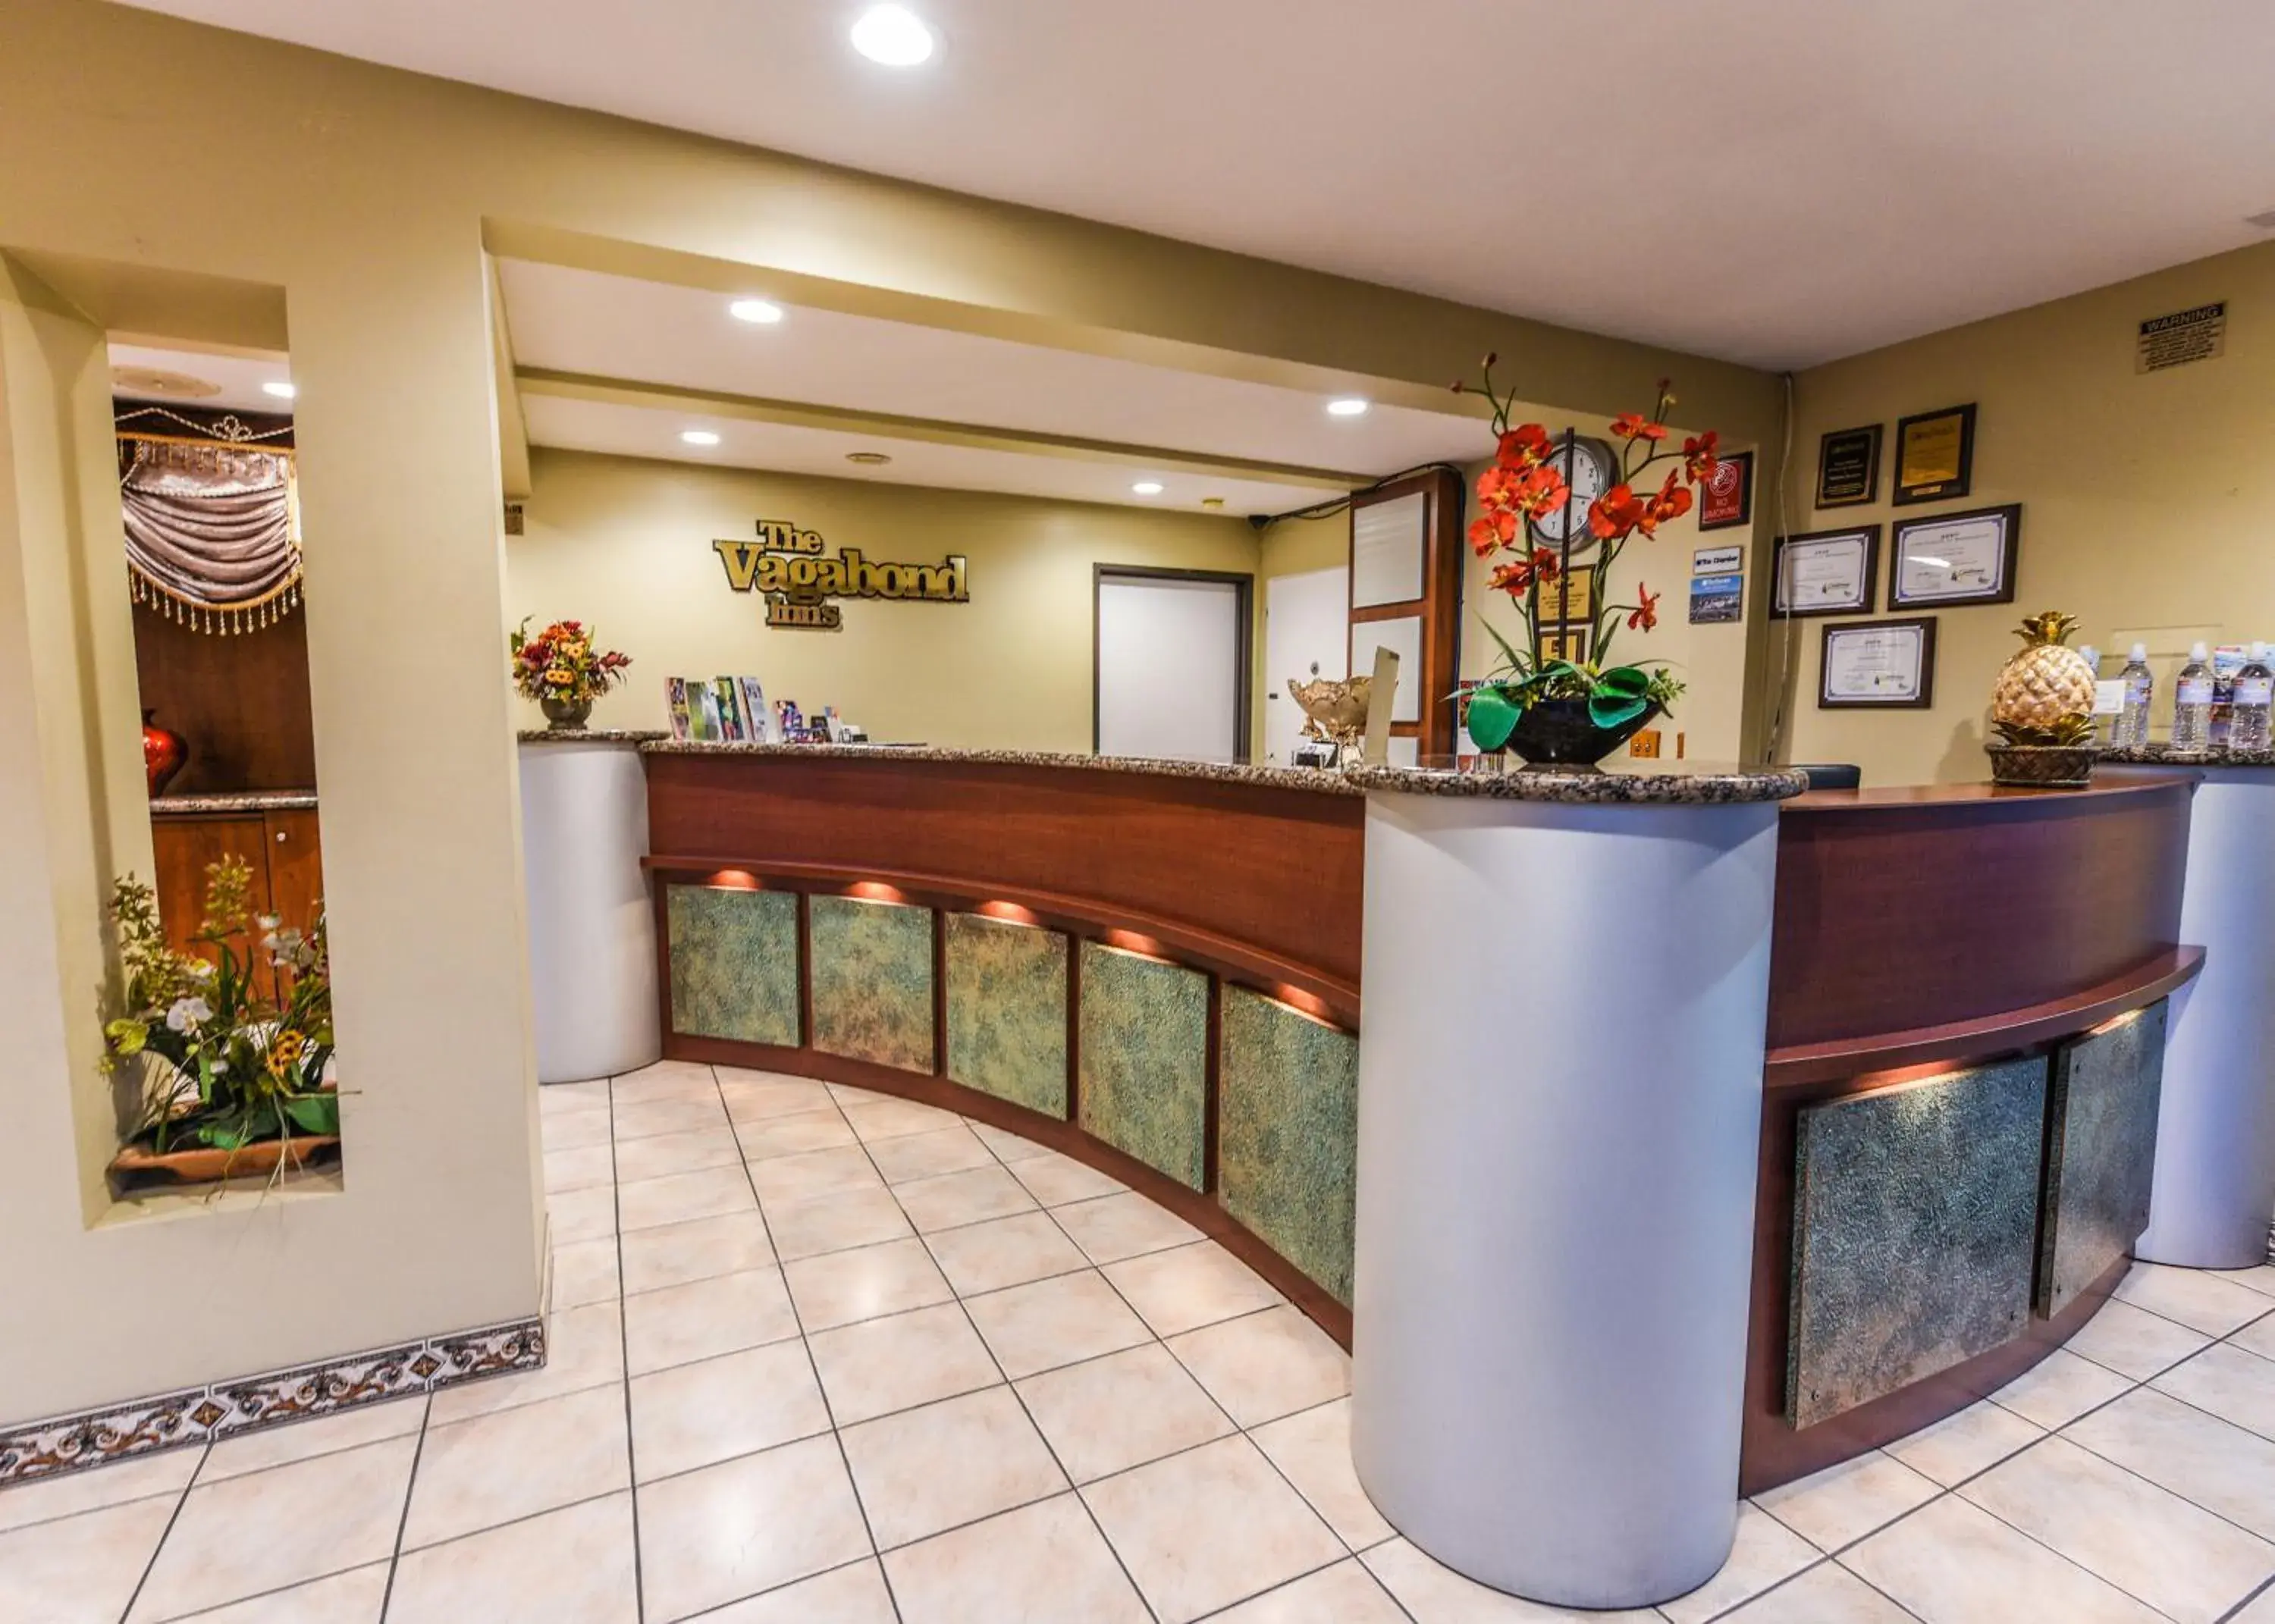 Lobby or reception, Lobby/Reception in Vagabond Inn Long Beach